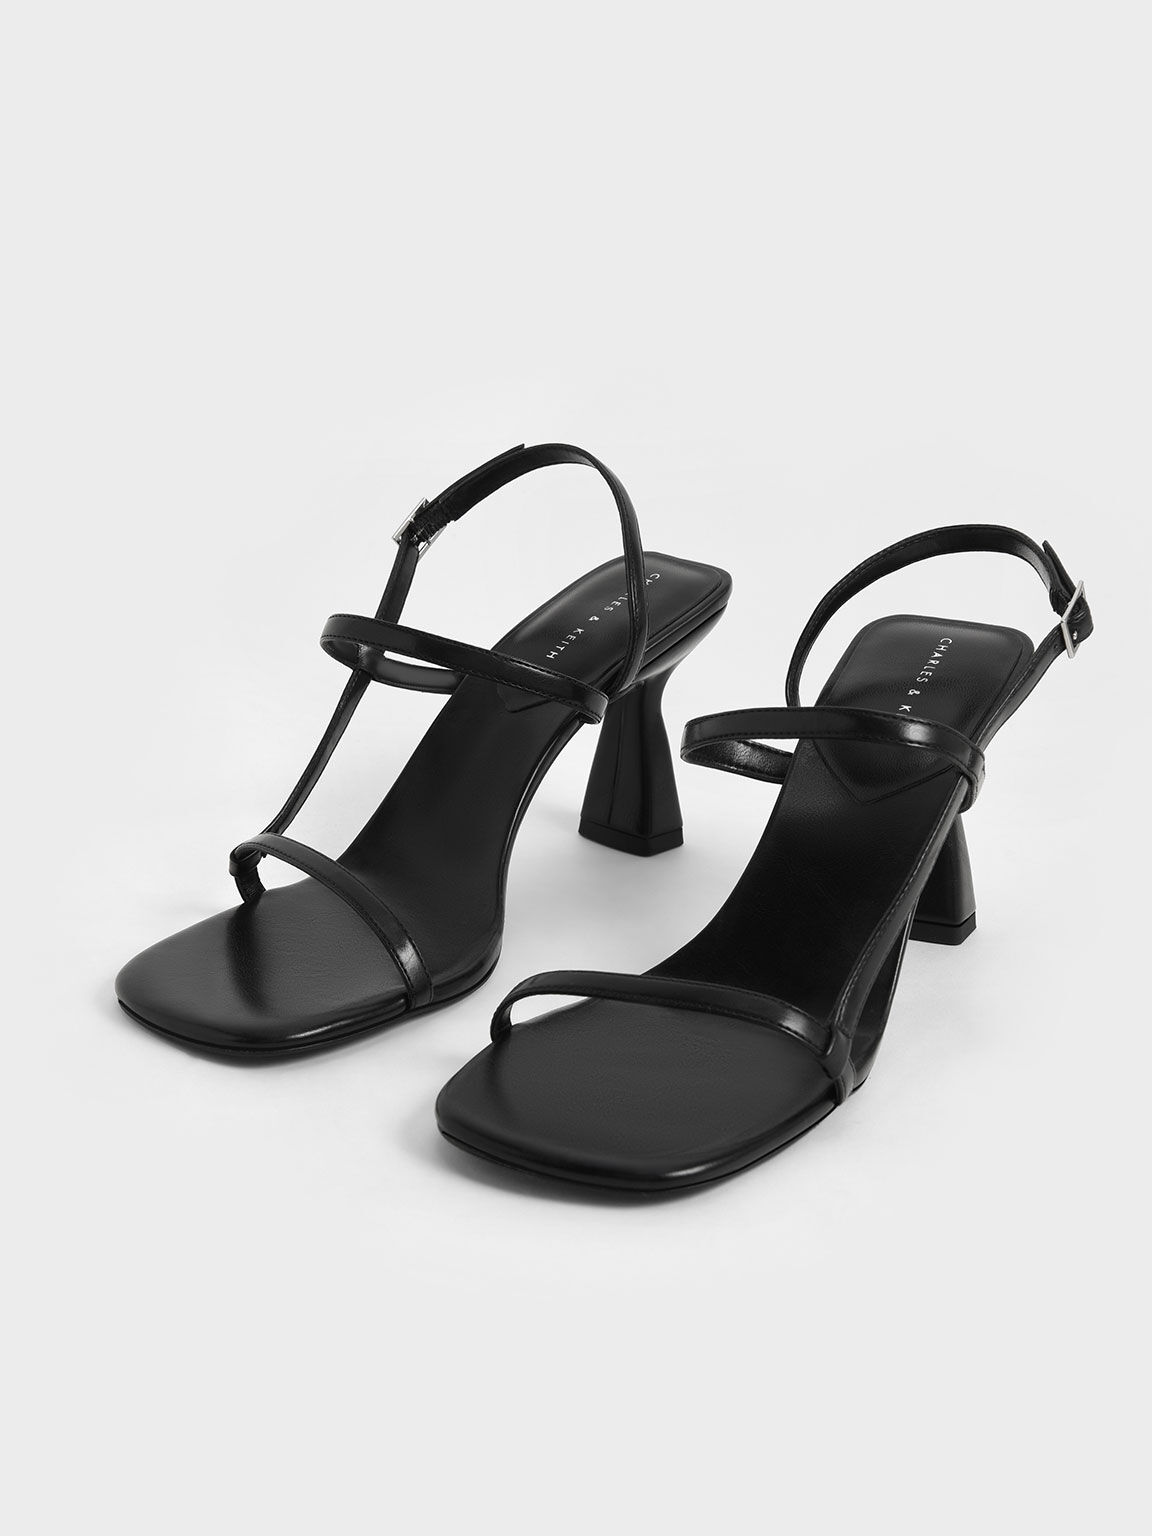 Strappy Sculptural Heel Slingback Sandals, Black, hi-res